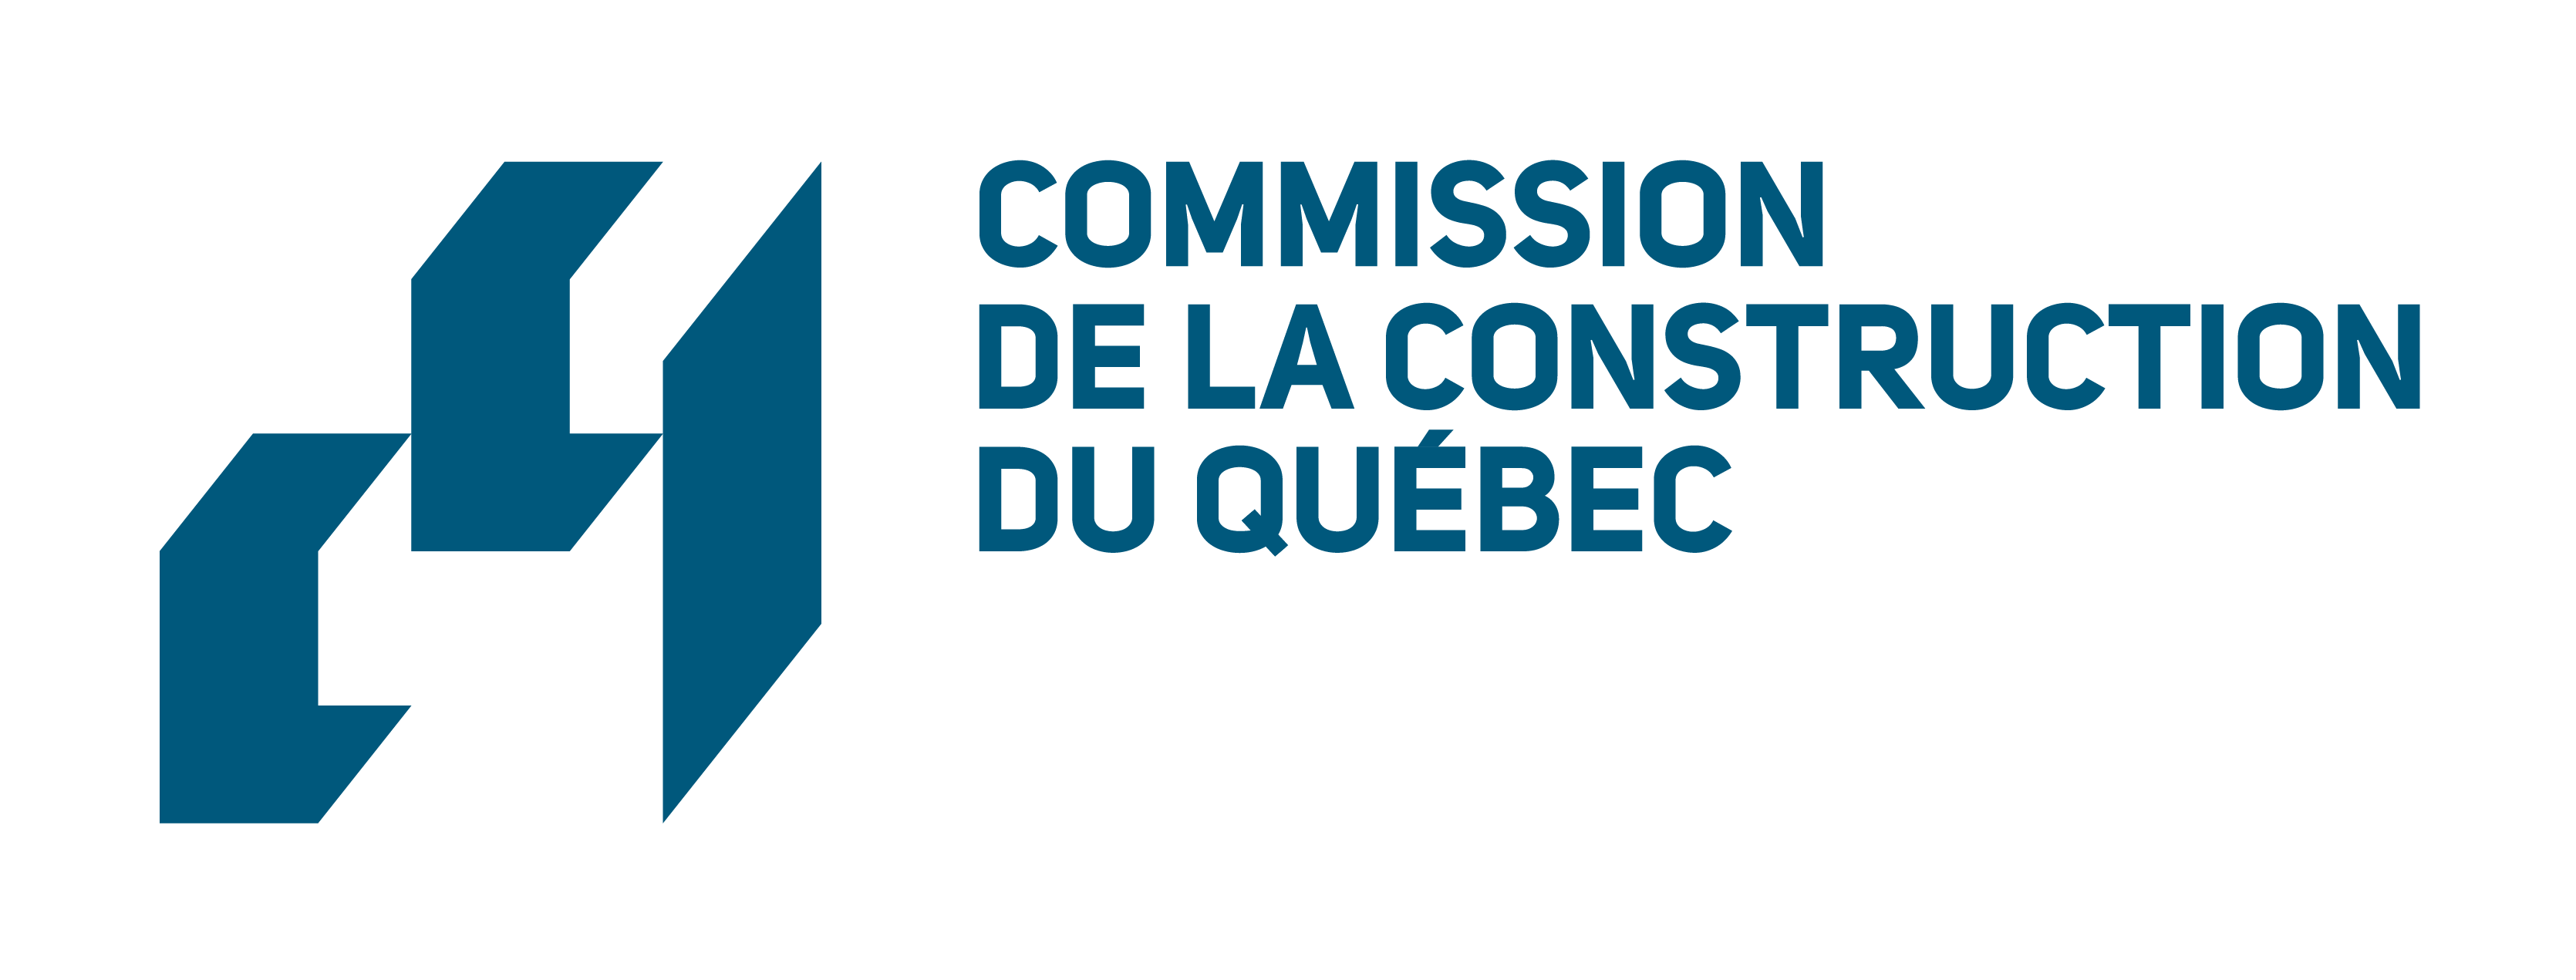 Trusted by Commission de la construction du québec logo